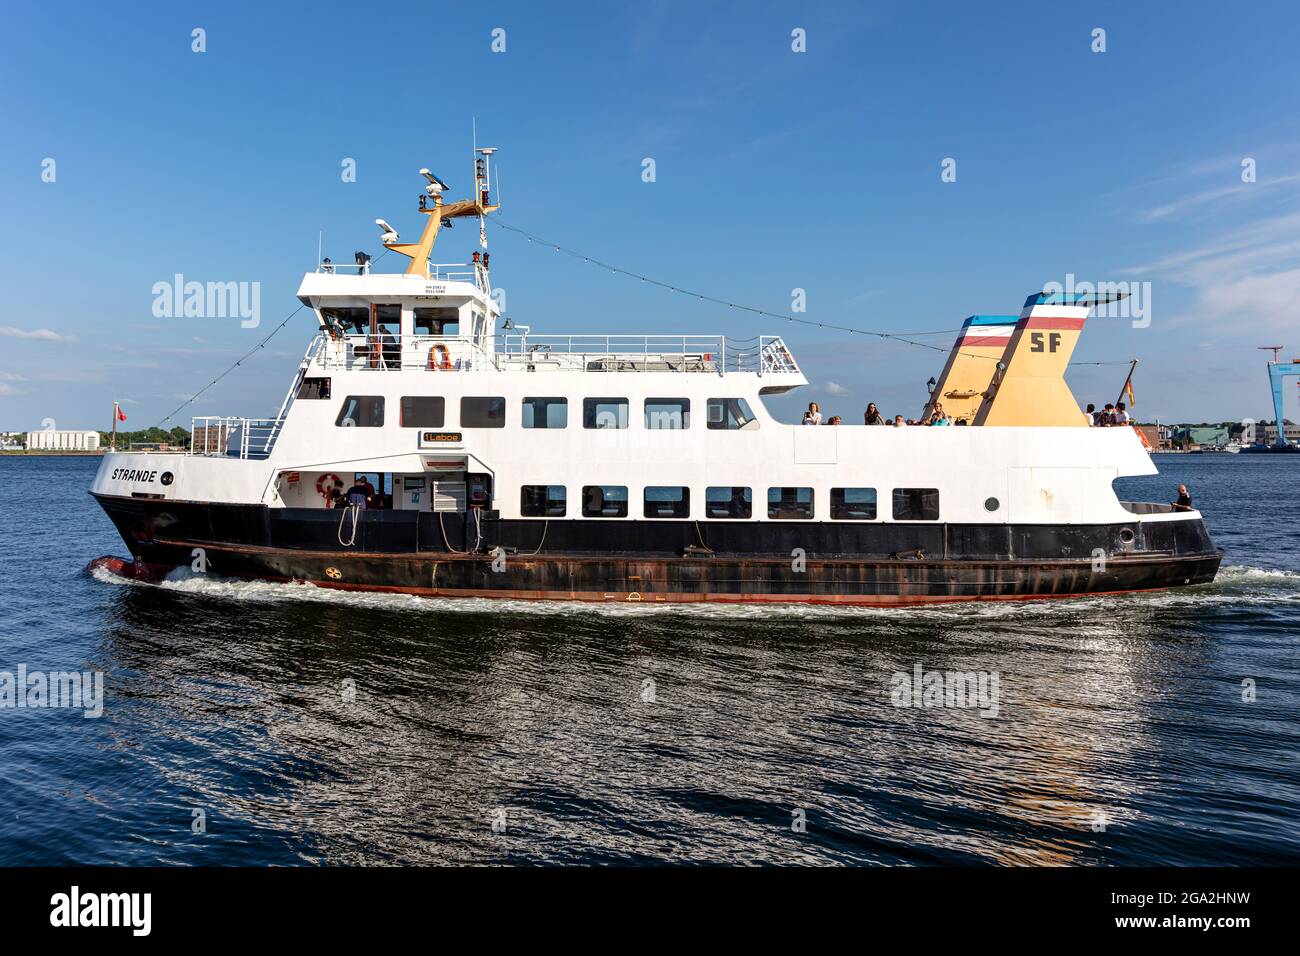 SFK passenger ship STRANDE in the Kiel Fjord Stock Photo